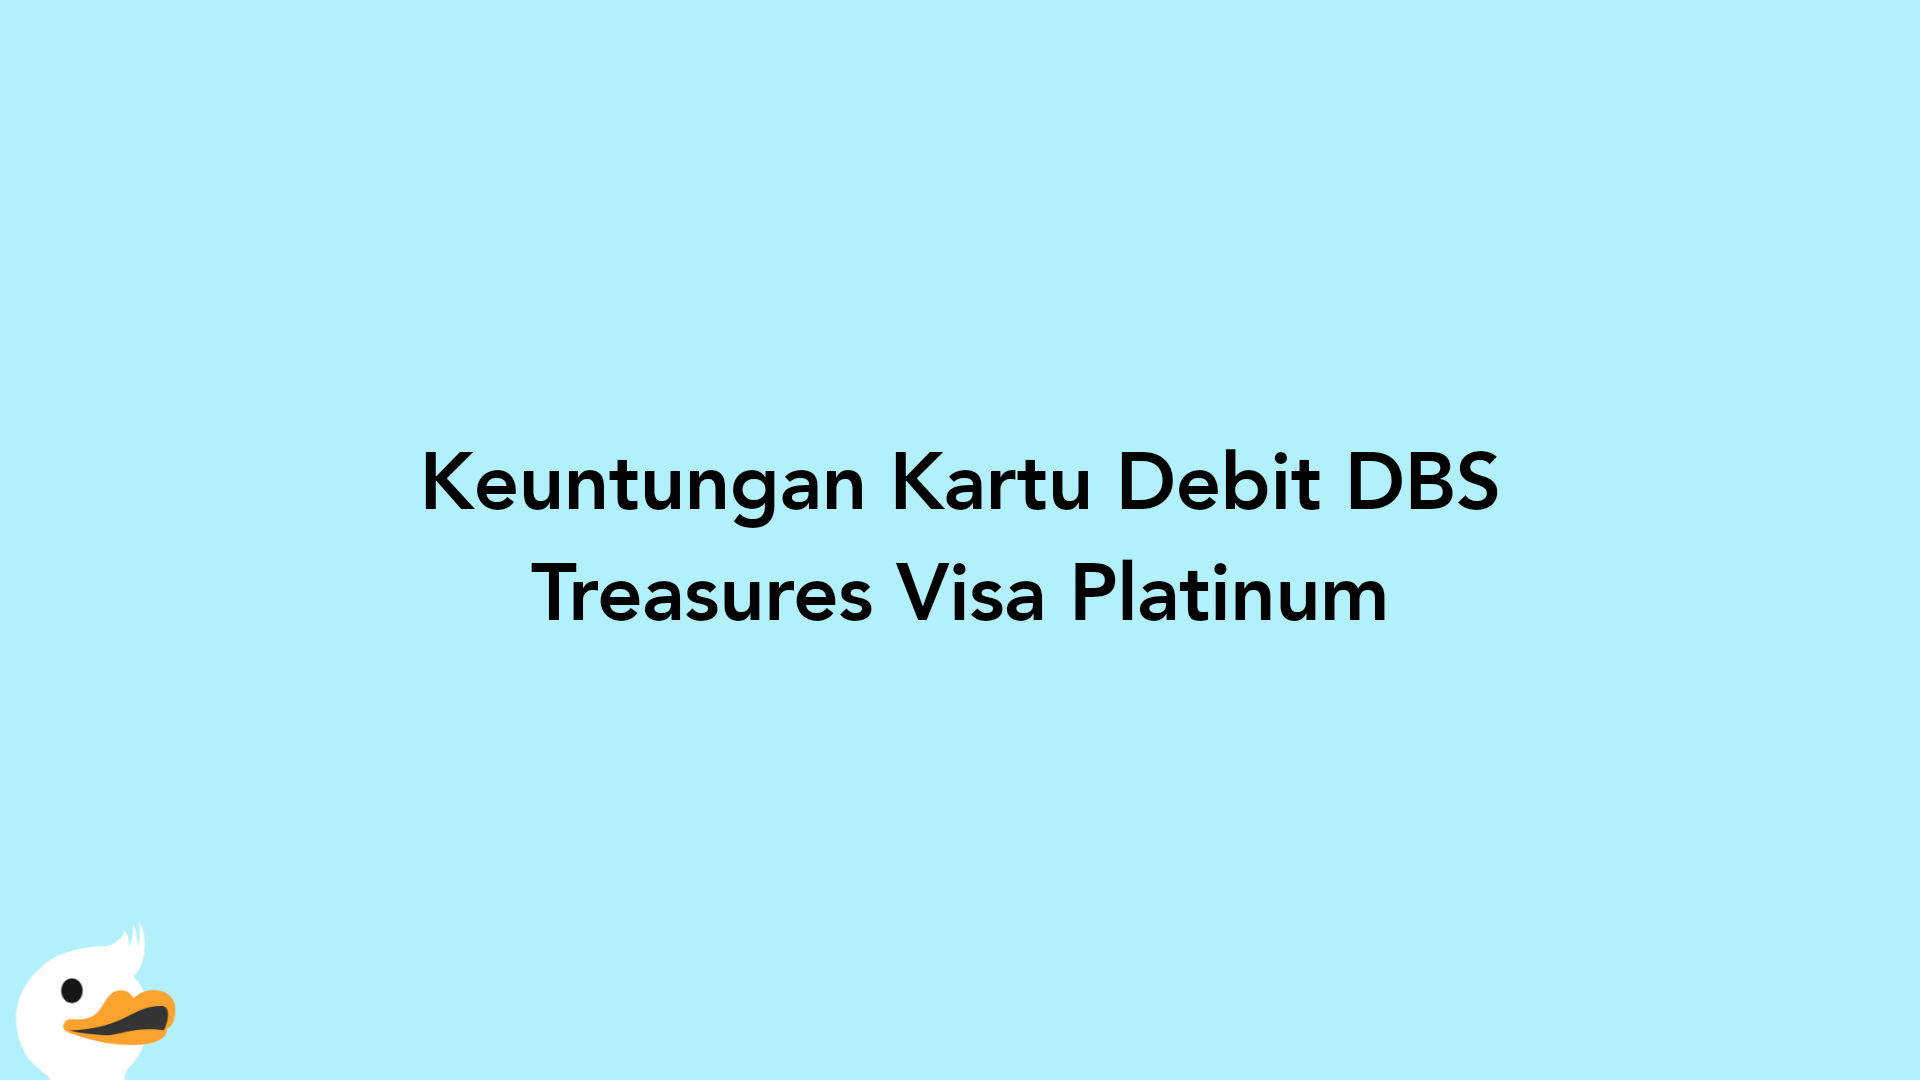 Keuntungan Kartu Debit DBS Treasures Visa Platinum